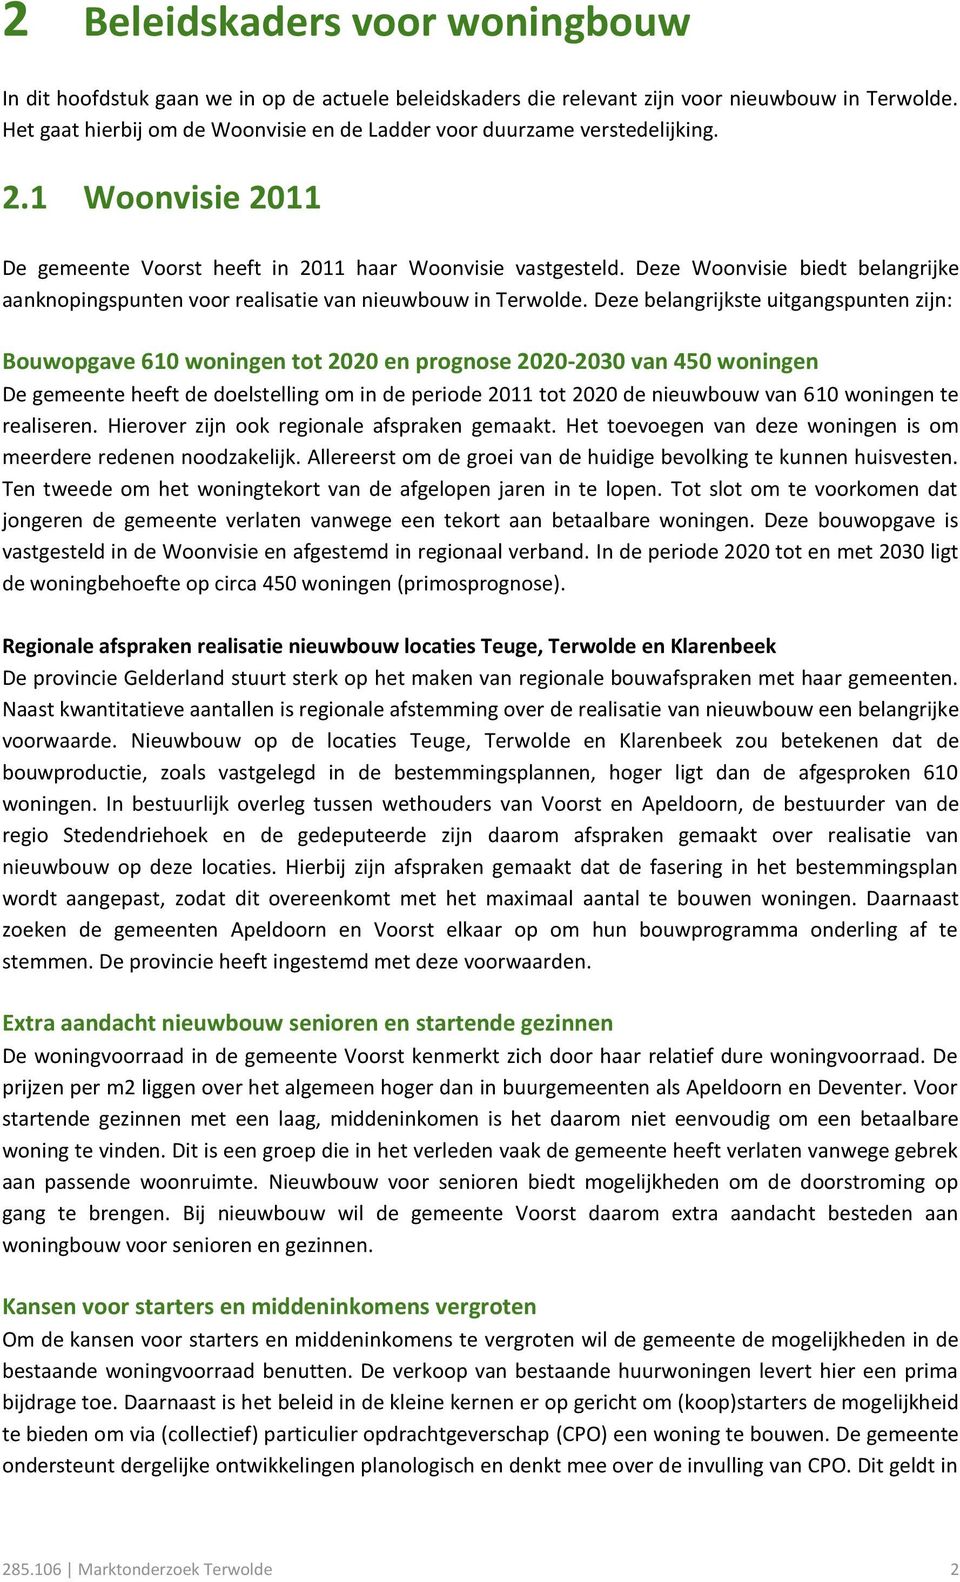 Deze Woonvisie biedt belangrijke aanknopingspunten voor realisatie van nieuwbouw in Terwolde.